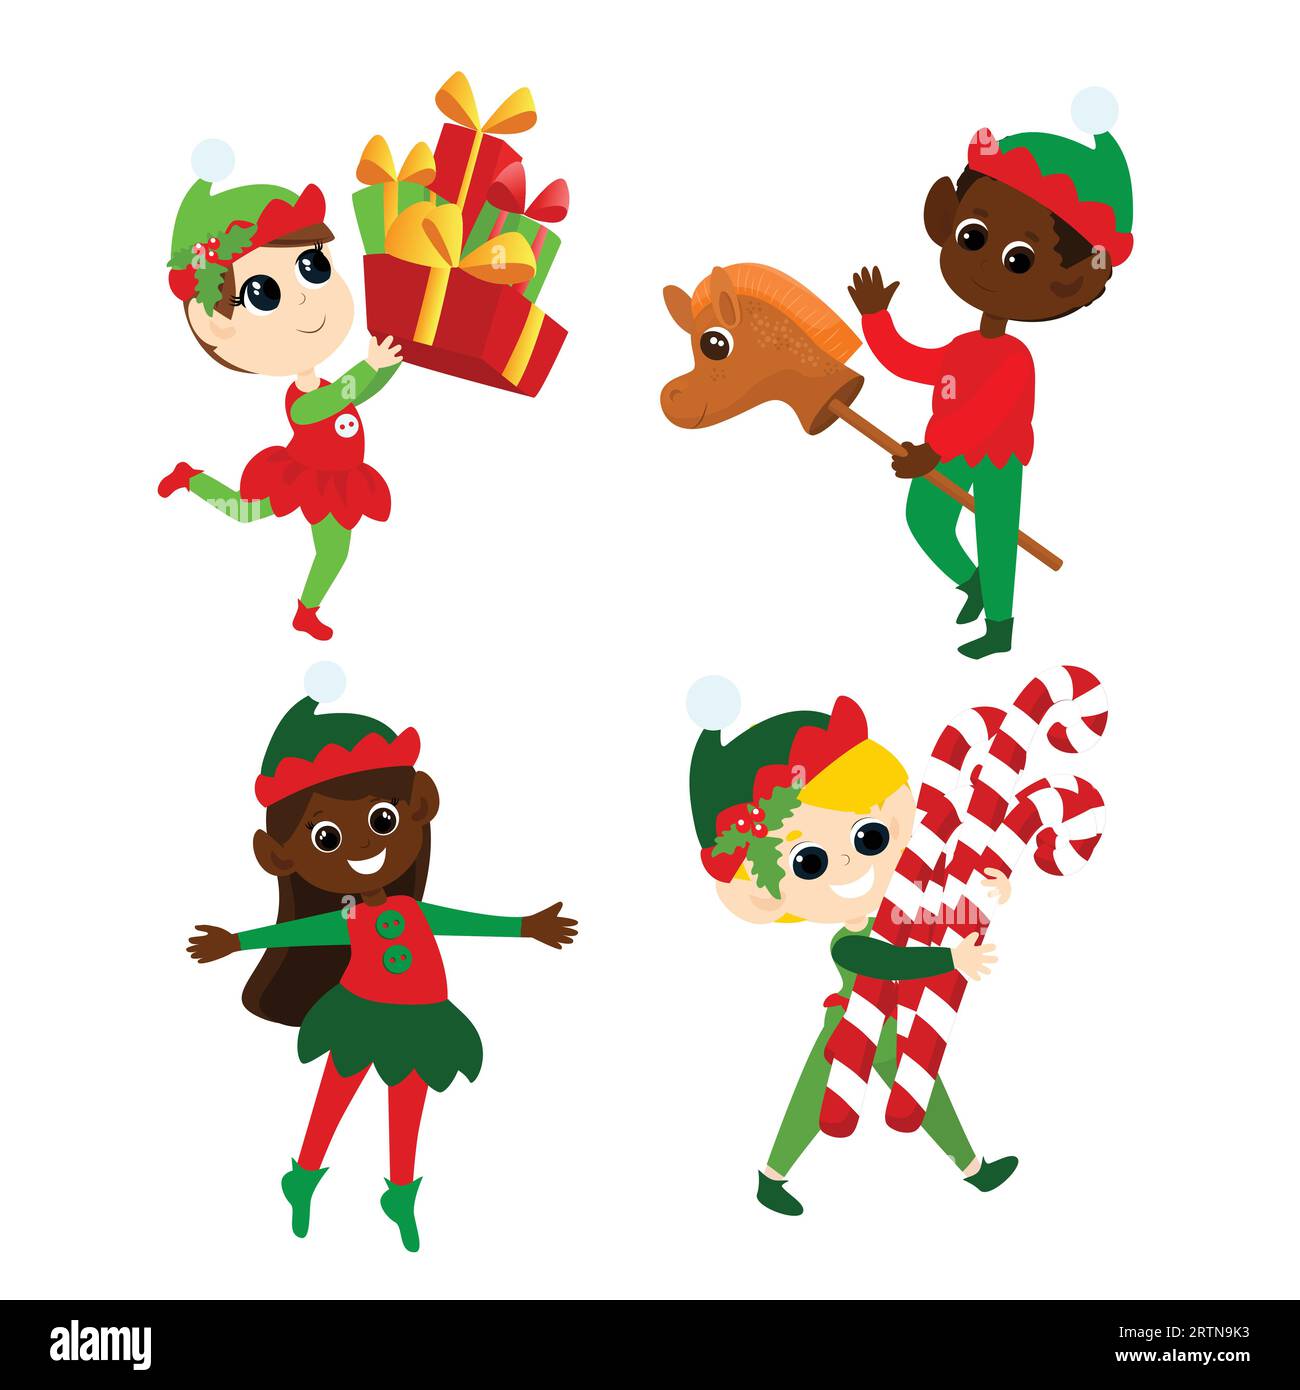 Mettez les elfes de Noël. Garçons et filles multiculturels en costumes traditionnels d'elfe. Ils dansent, sourient, apportent des cadeaux, portent des sucettes. Illustration de Vecteur